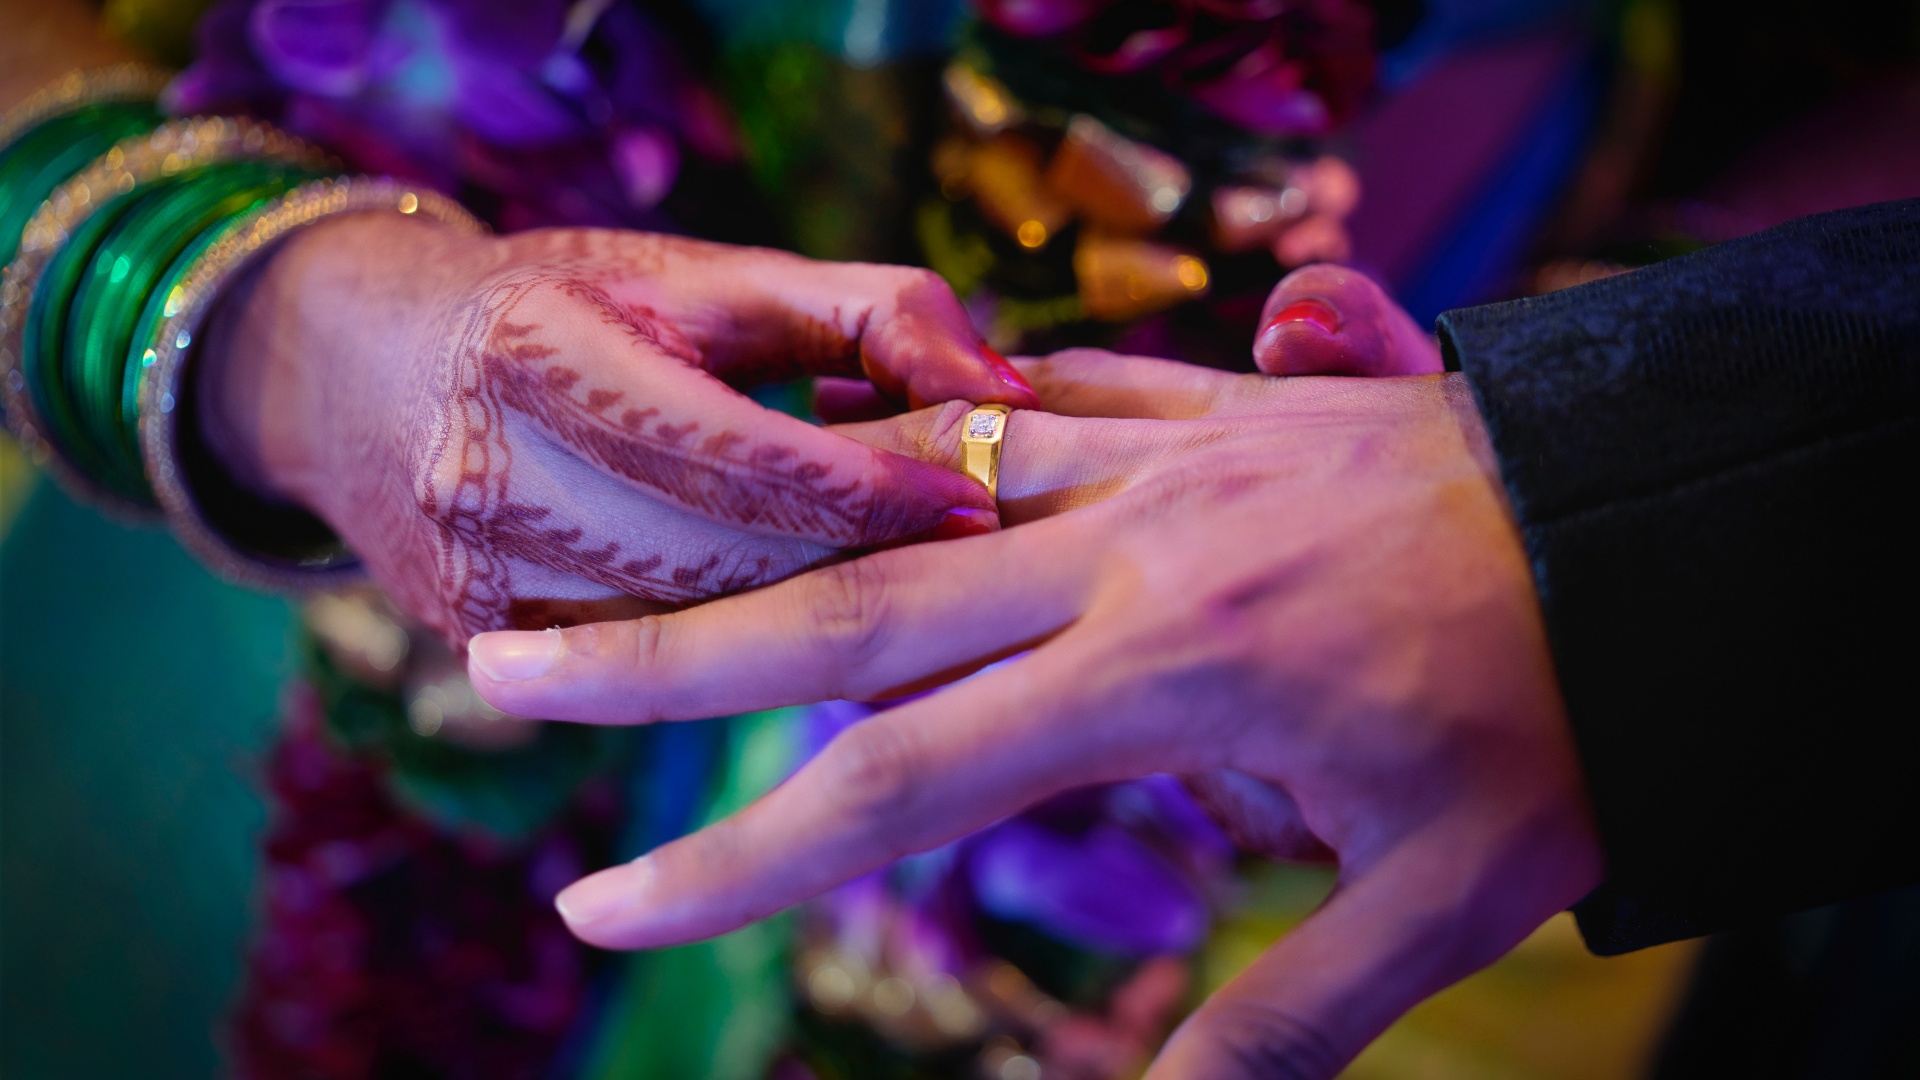 Hennával festett minta a menyasszony kezén egy indiai esküvőn